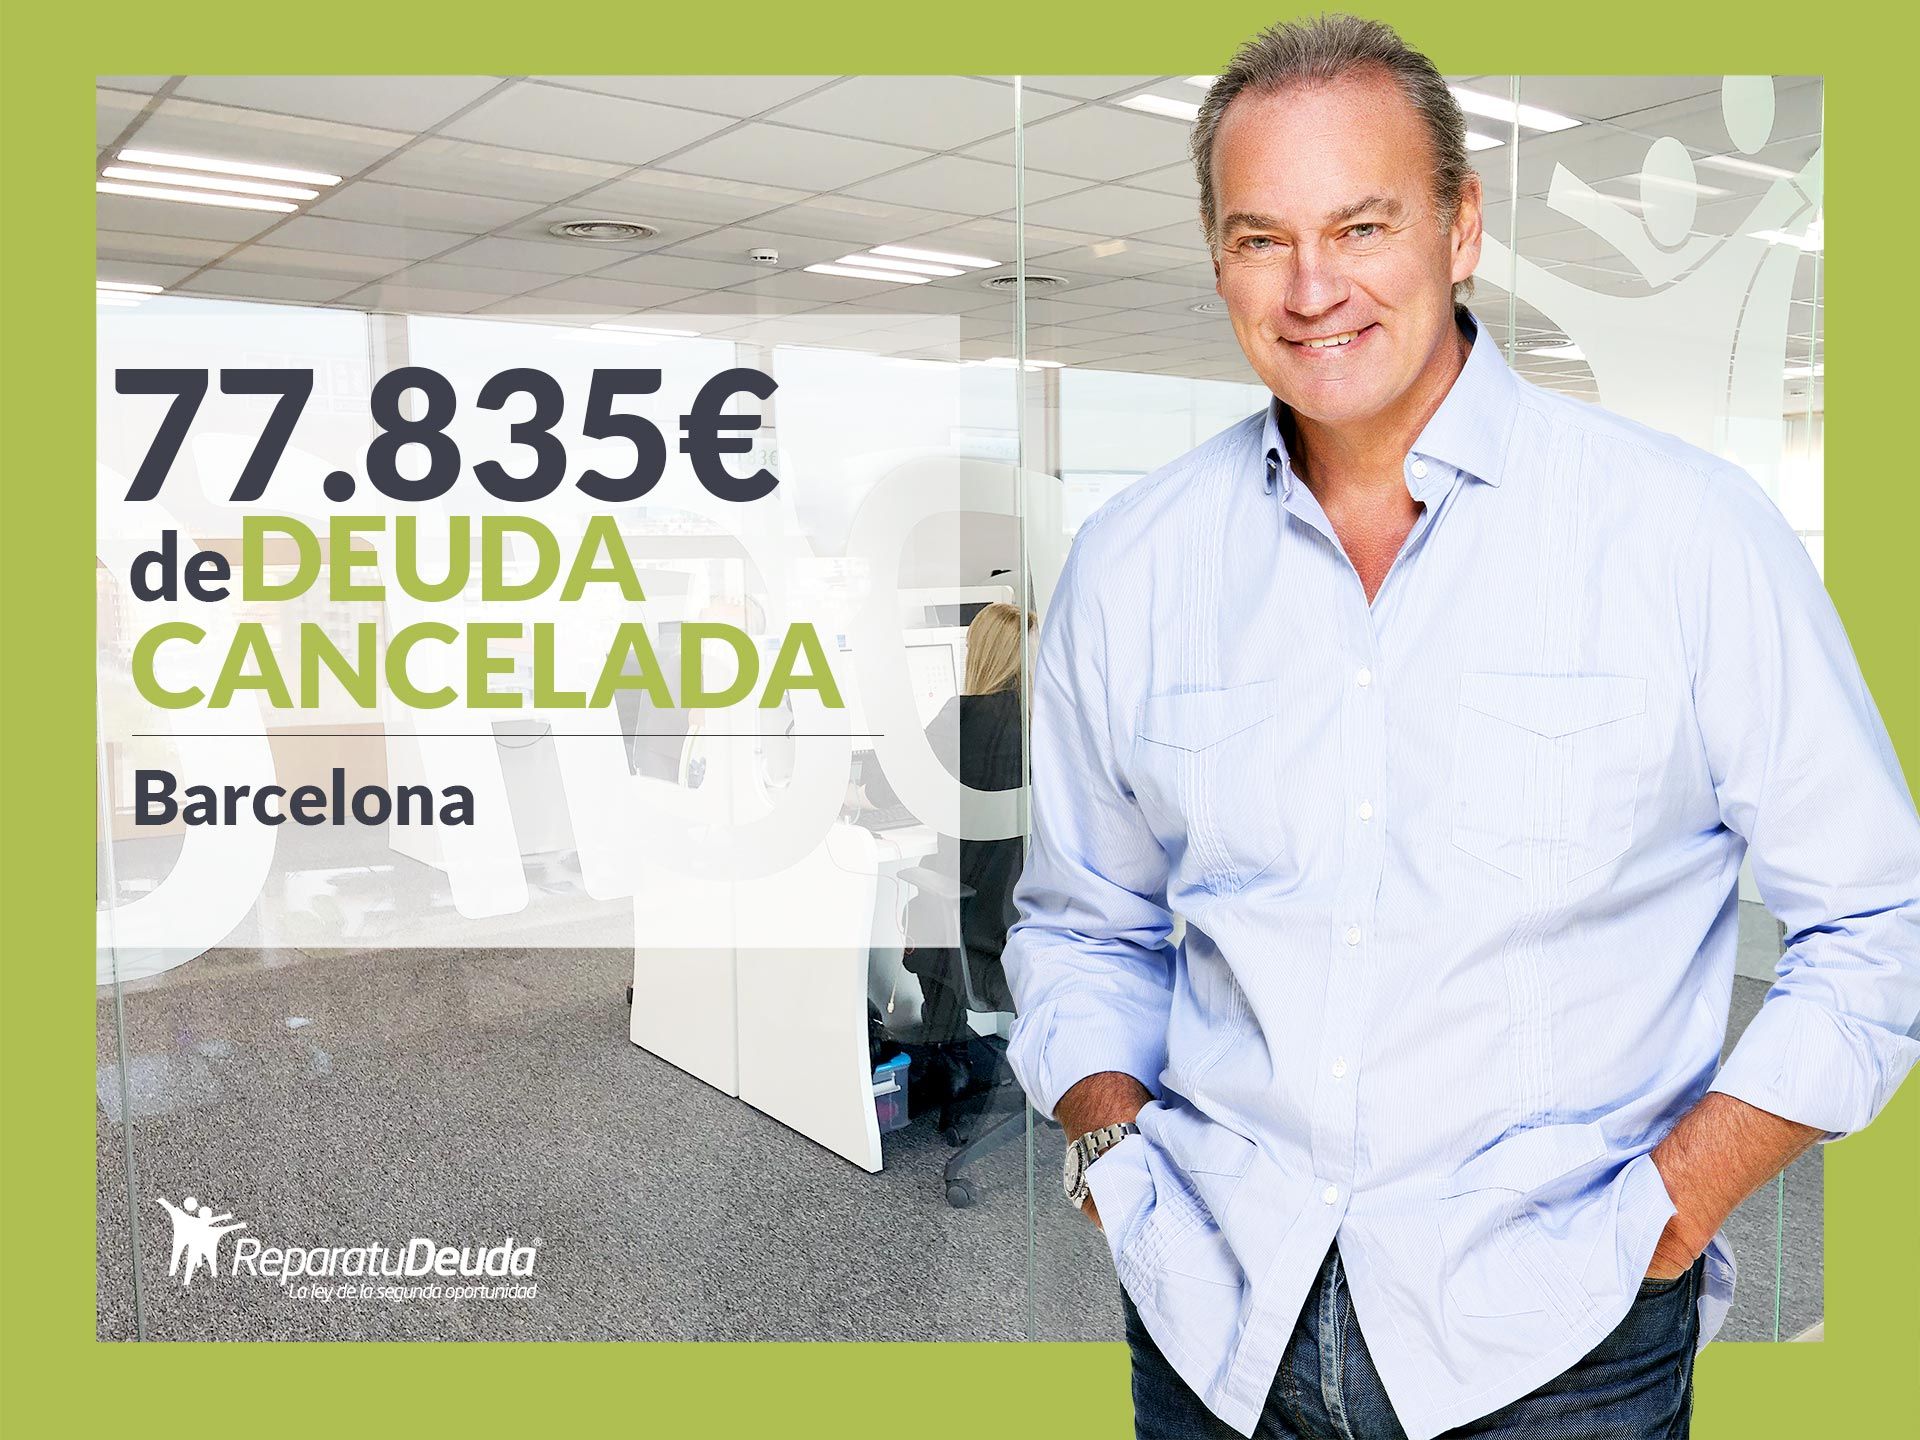 Repara tu Deuda Abogados cancela 77.835? en Barcelona (Catalunya) con la Ley de la Segunda Oportunidad